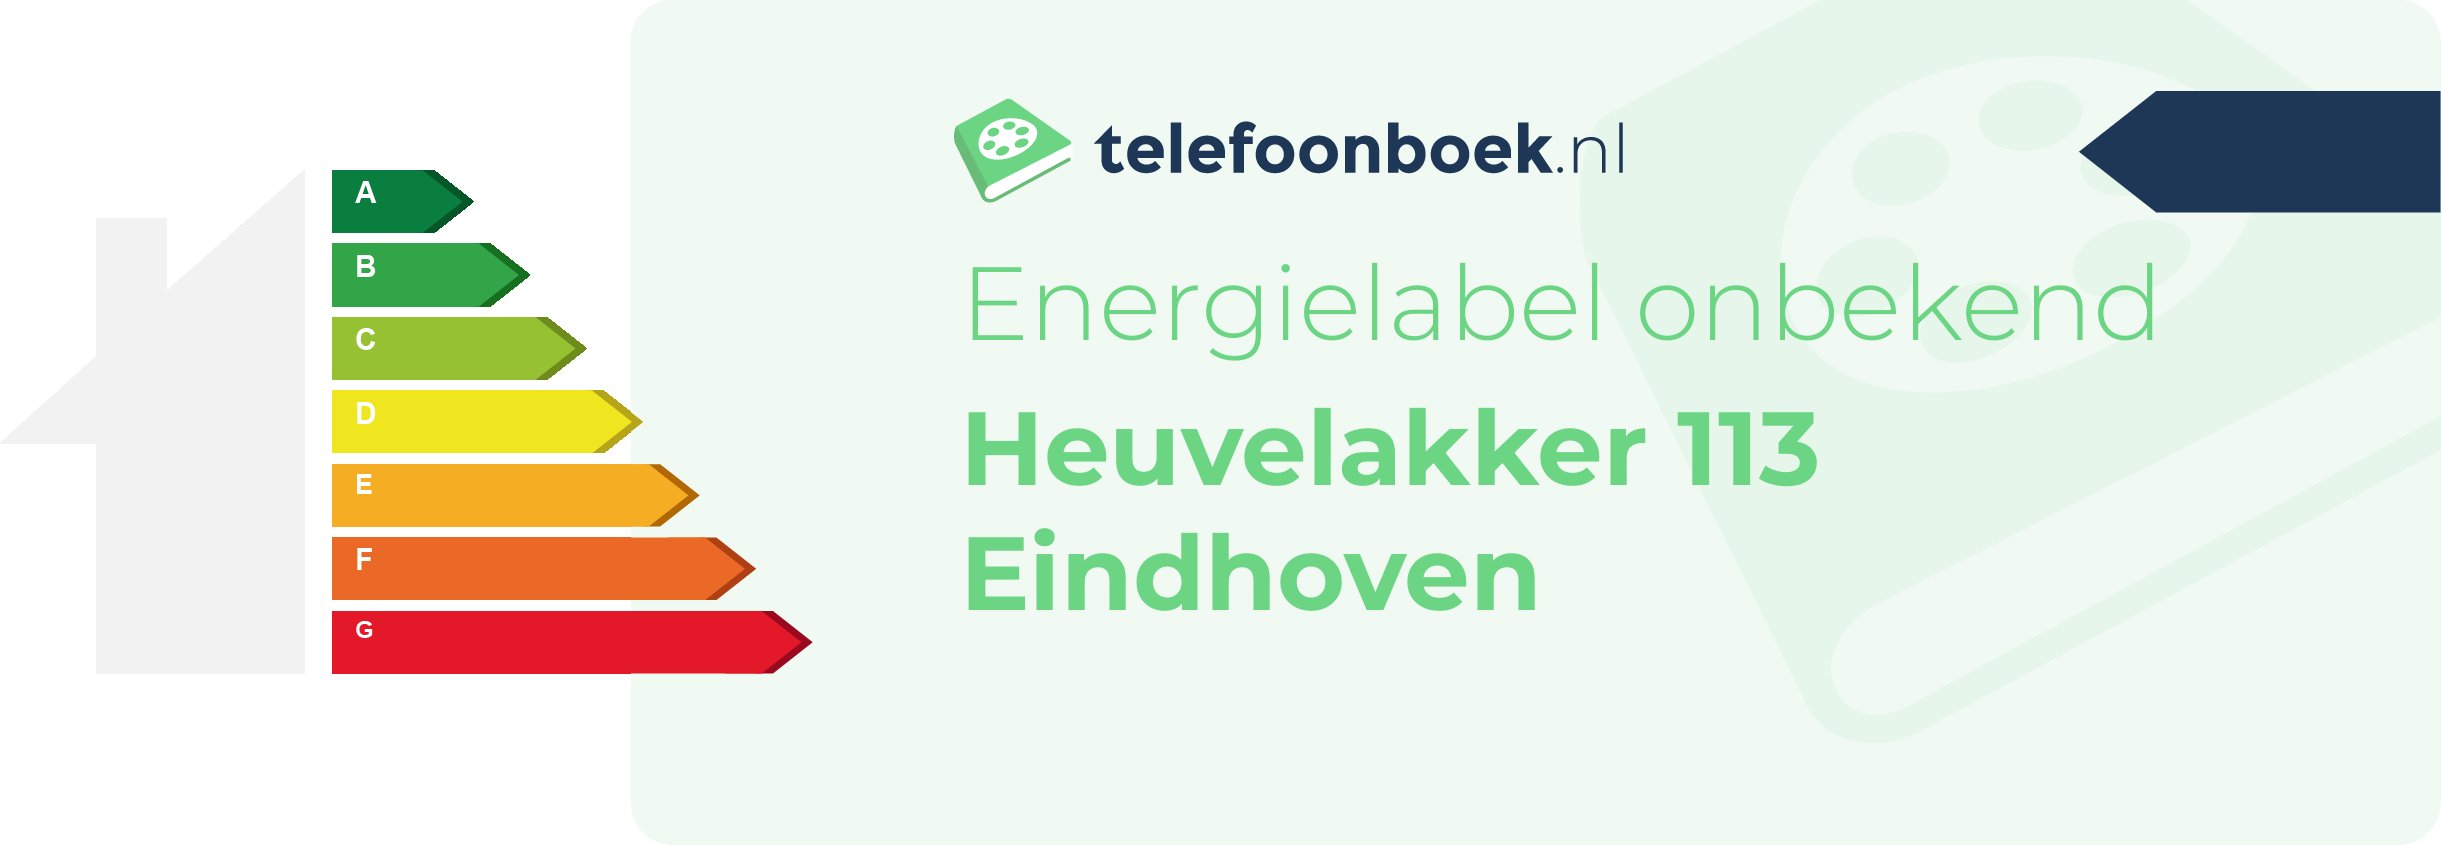 Energielabel Heuvelakker 113 Eindhoven